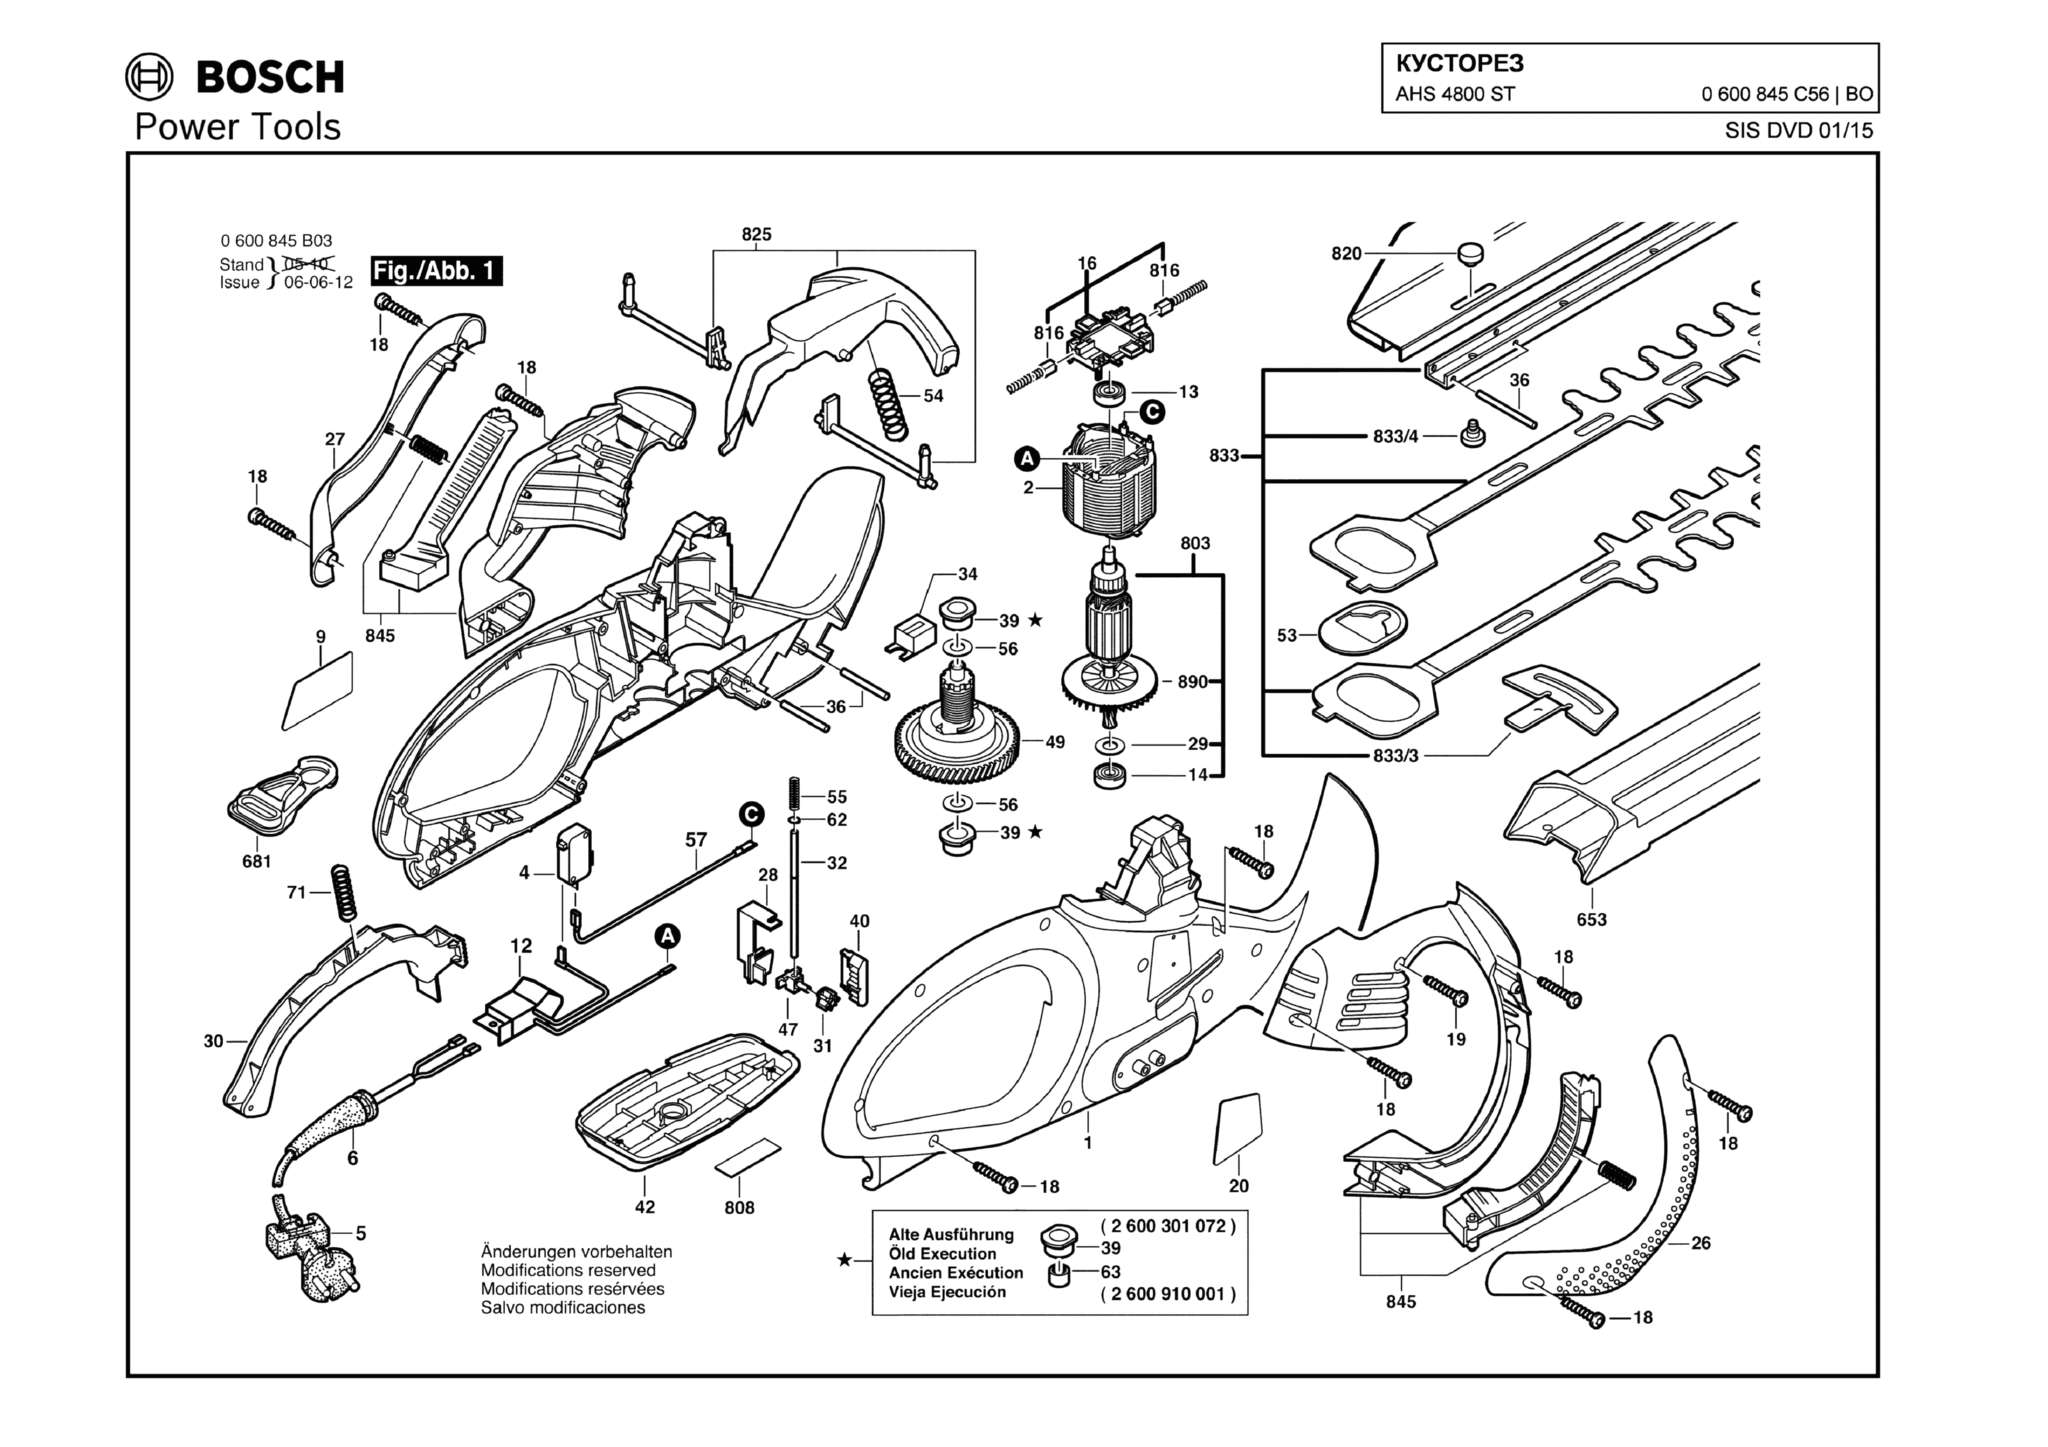 Запчасти, схема и деталировка Bosch AHS 4800 ST (ТИП 0600845C56)